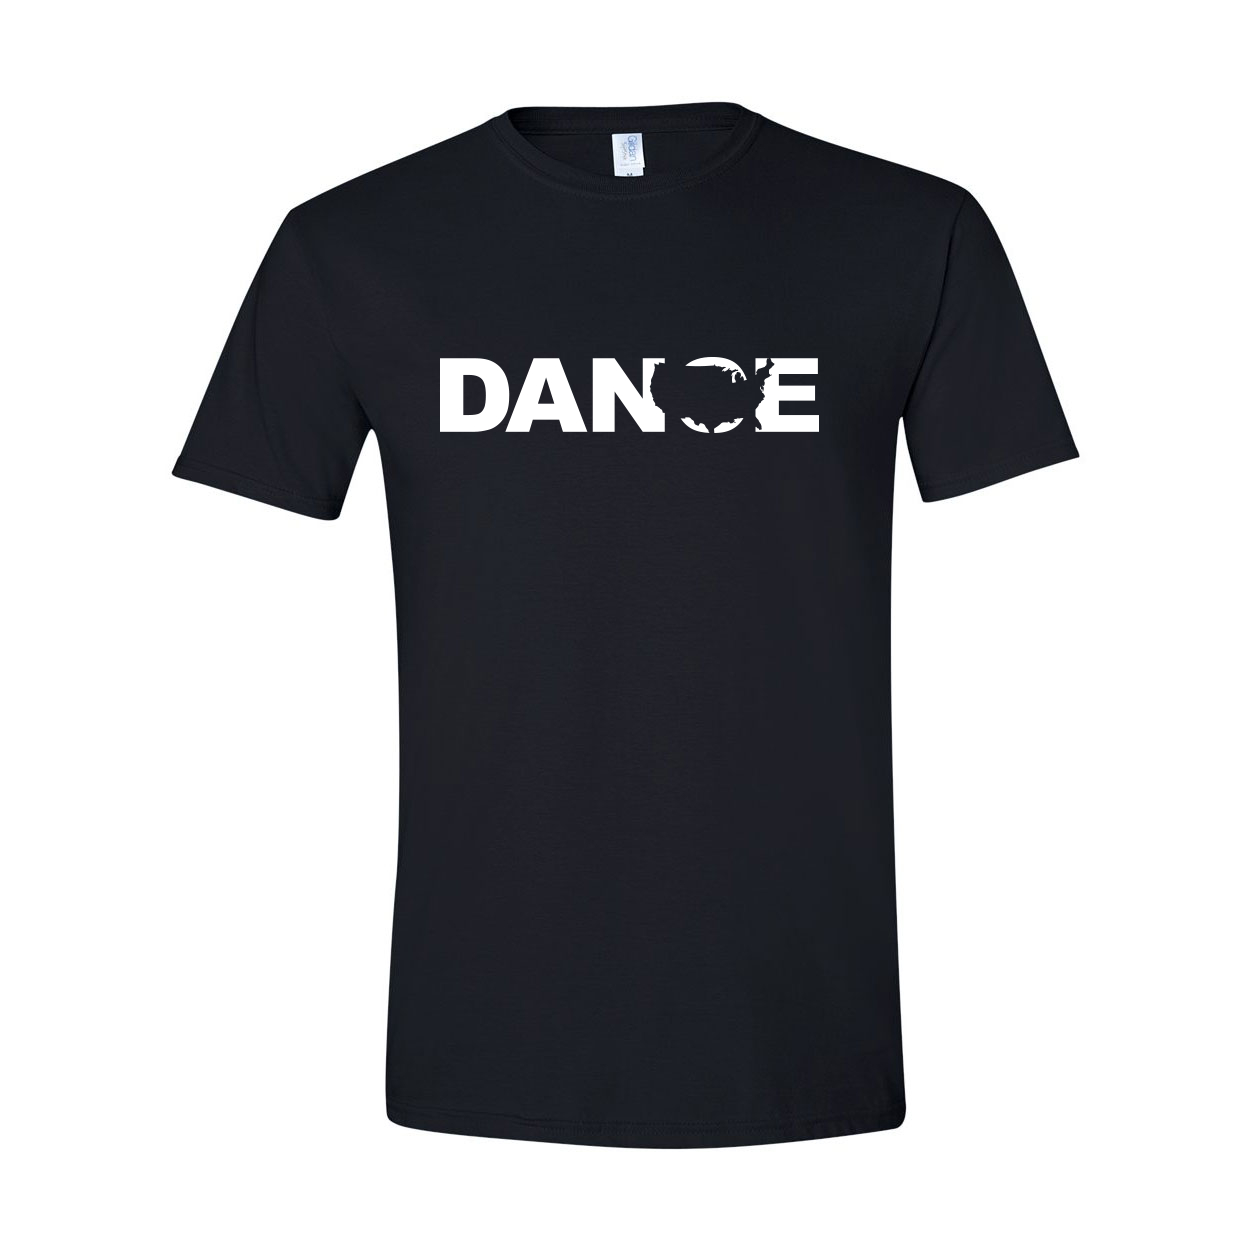 Dance United States Classic T-Shirt Black (White Logo)